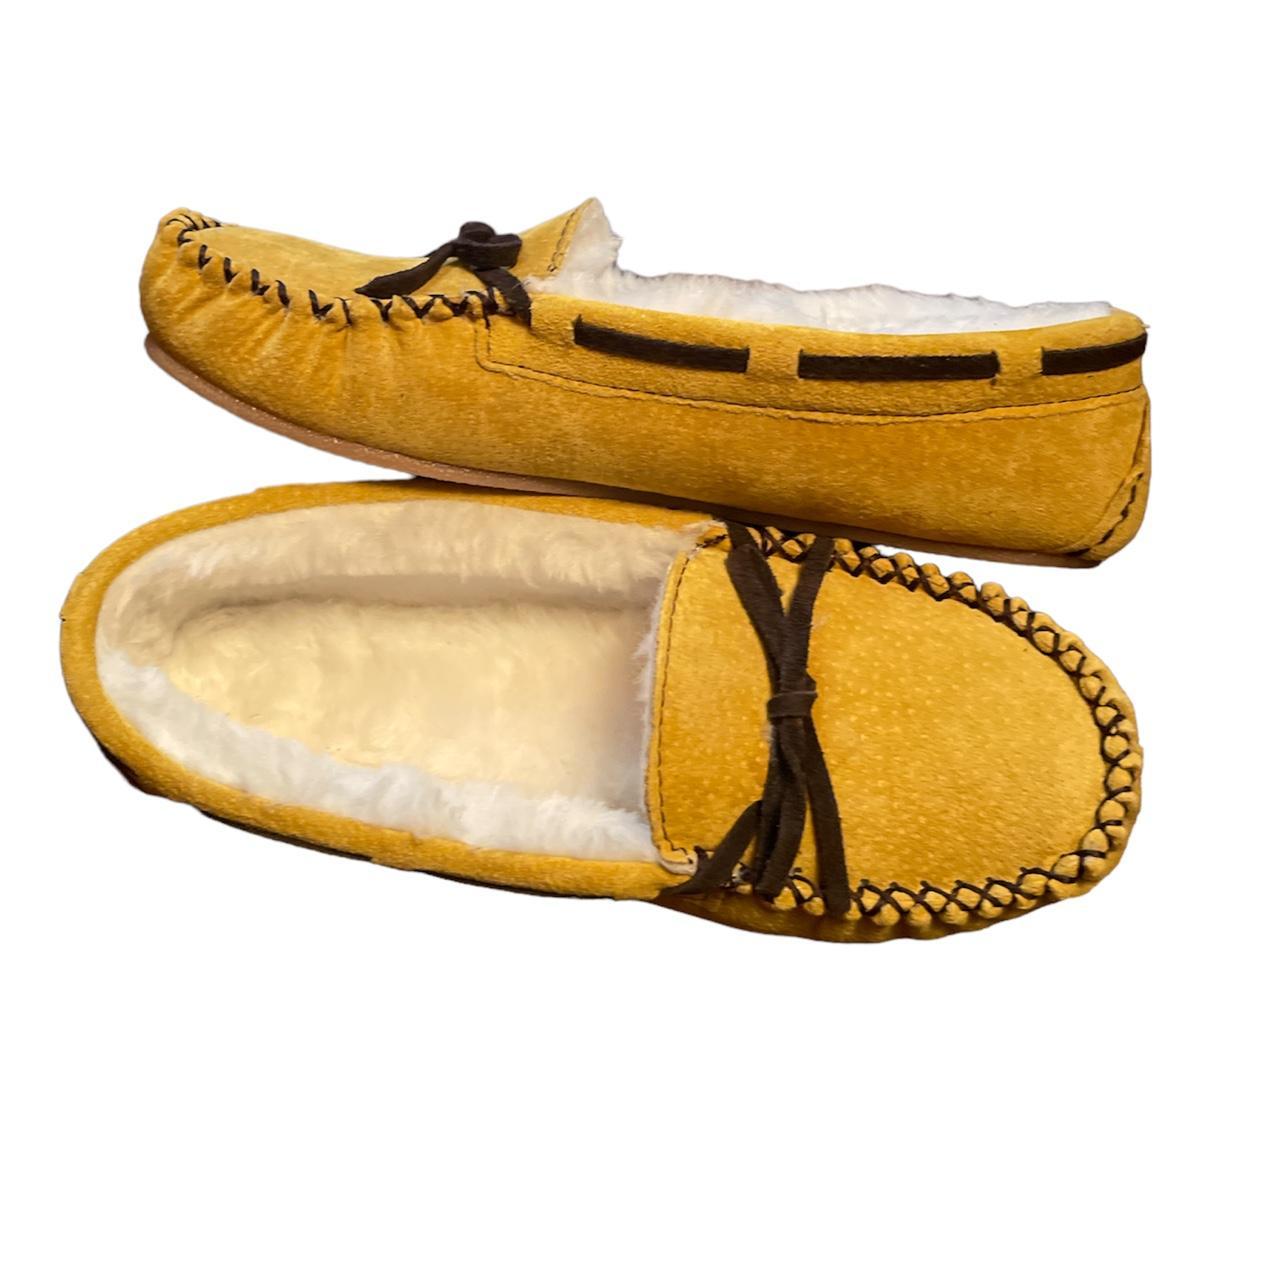 Lamo Women's Yellow and White Slippers (2)